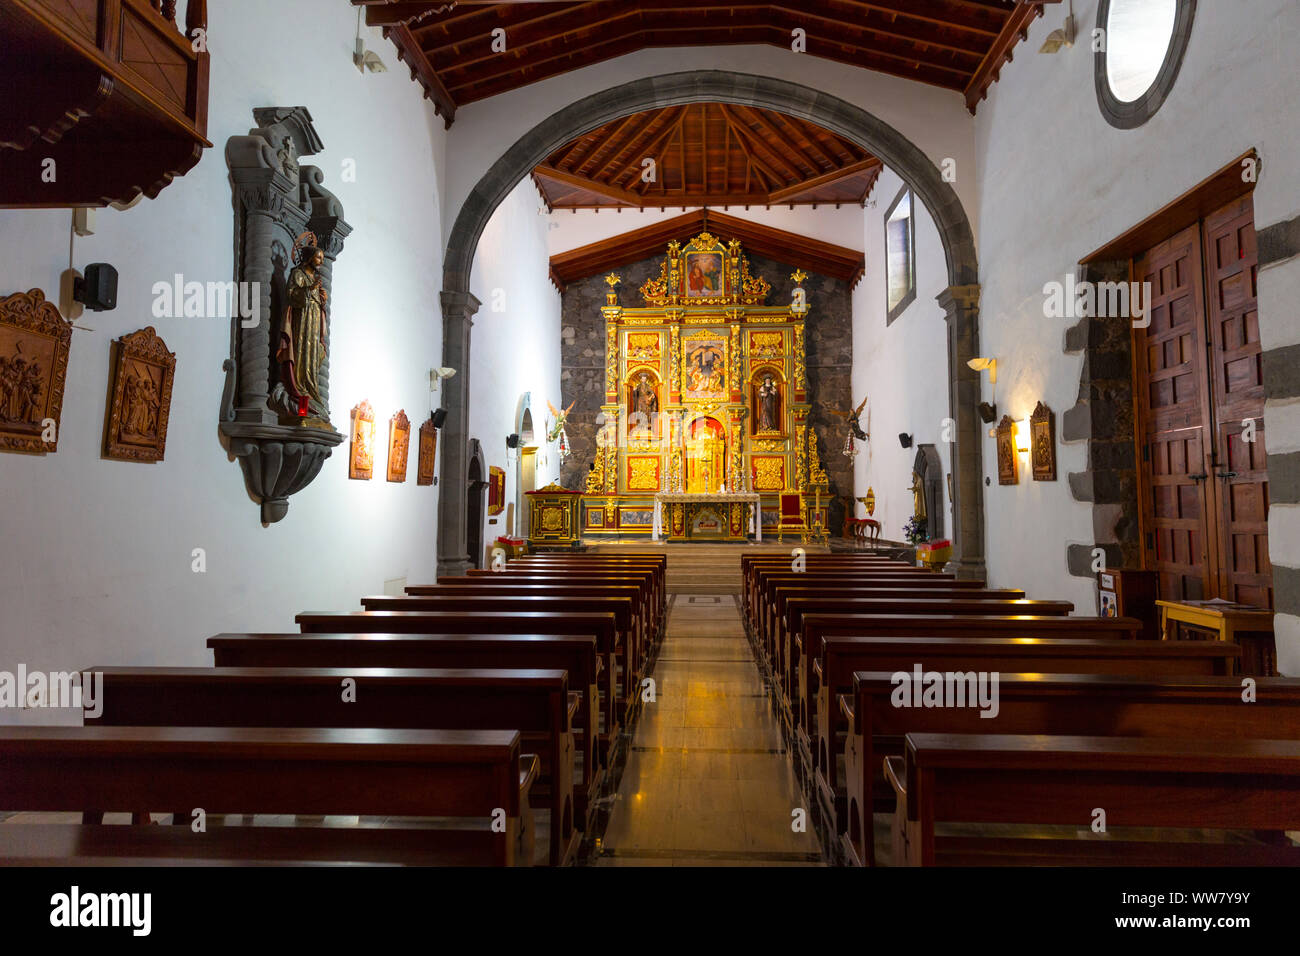 Altar, monastery, Vilaflor, Tenerife, Spain, Canary Islands, Europe Stock Photo